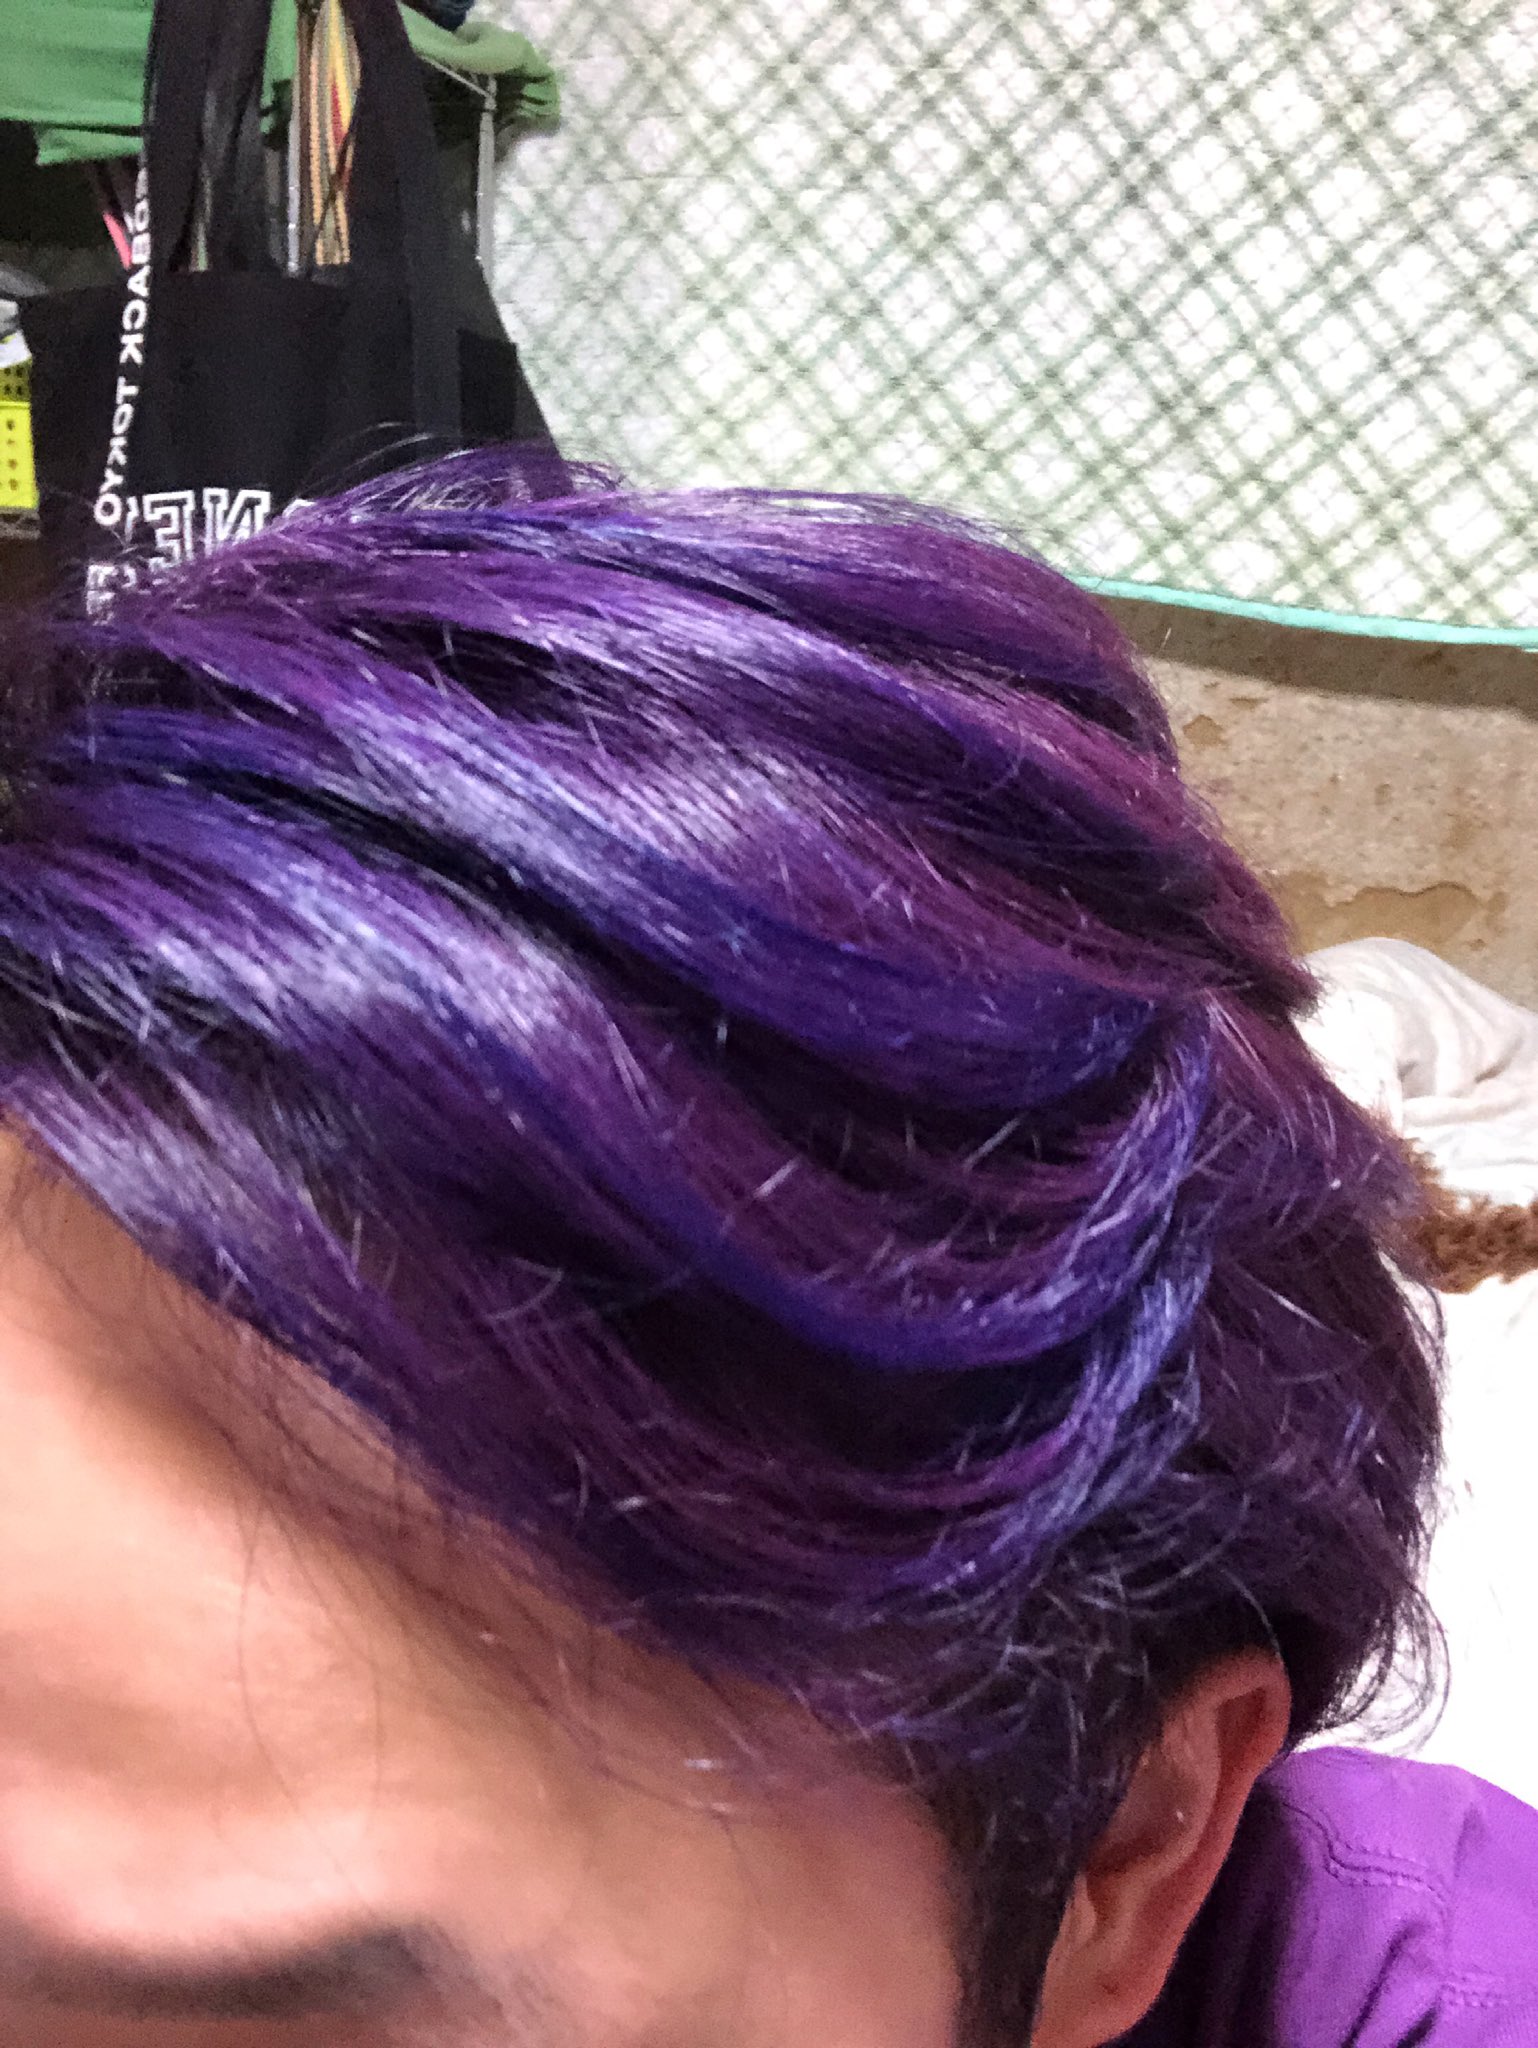 ムラサキエルメスのsyo 少し前から気になってたこのヘアマニキュア 試してみたら想像以上に染まったw めっちゃ紫 ついでに来てるtシャツも紫 なにこれ発色すげぇ T Co Lt0paafvo2 Twitter